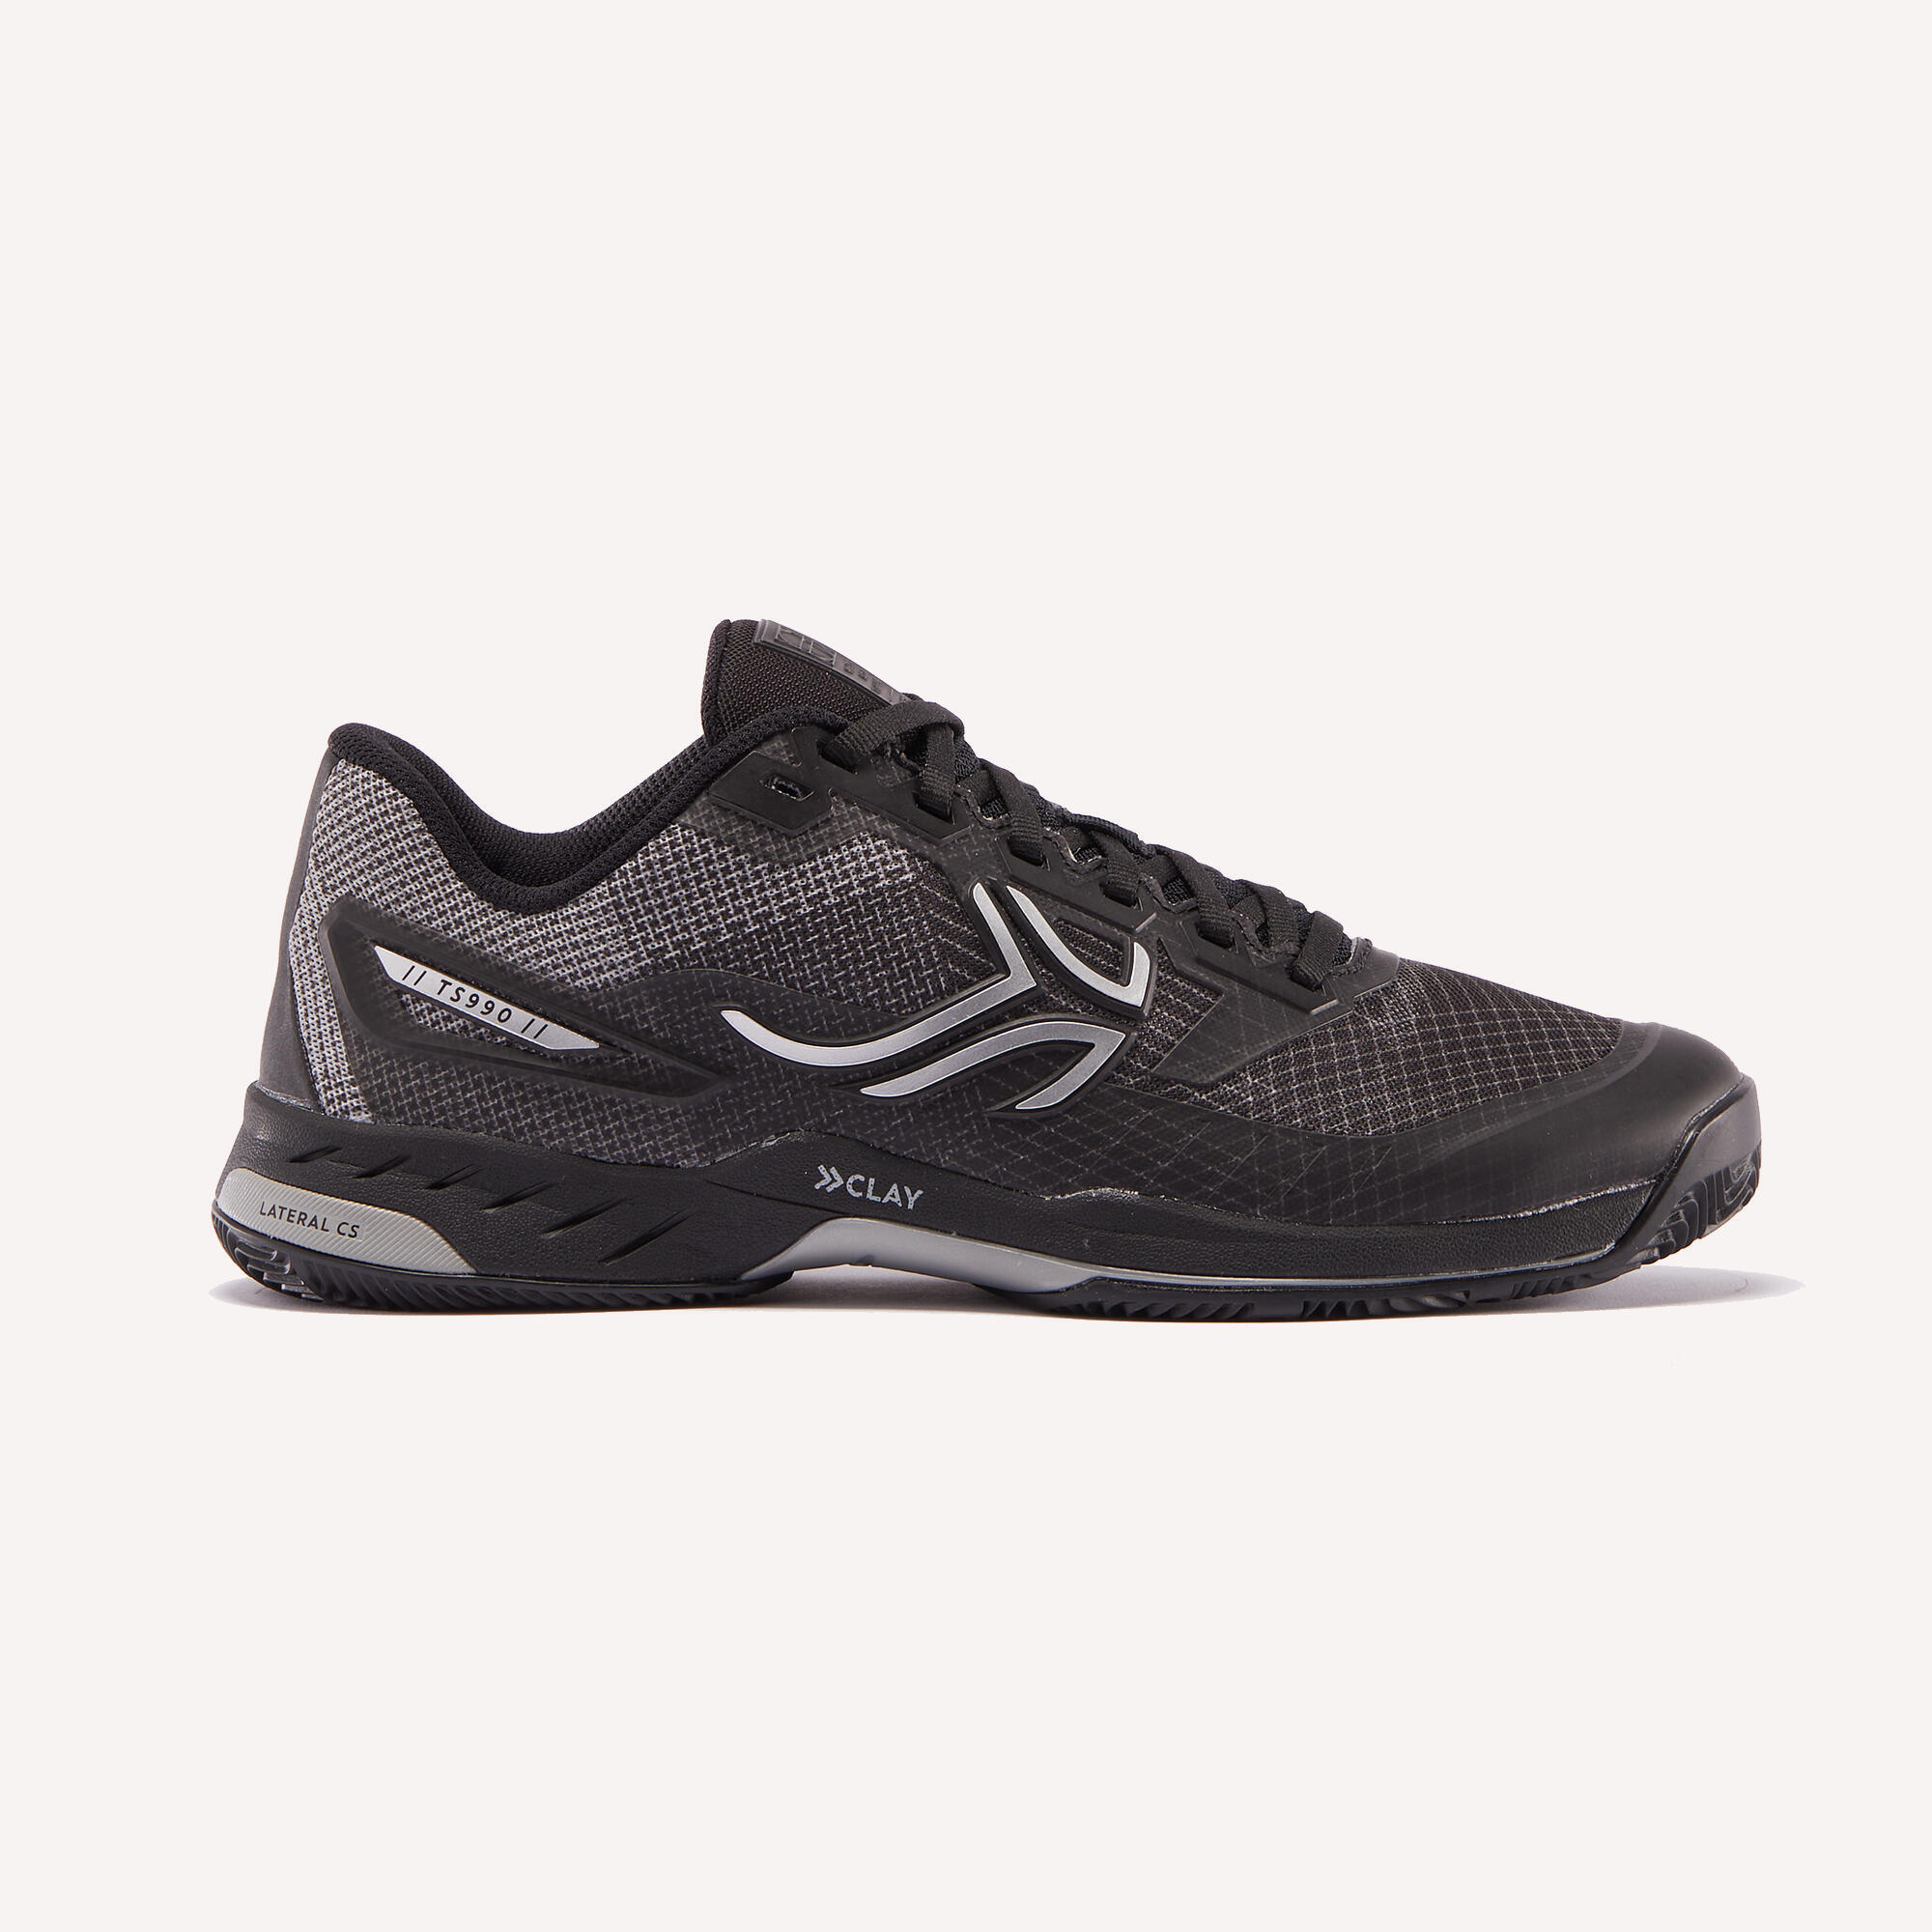 Мужская теннисная обувь - TS990 Clay Black ARTENGO, черный/ледяной серый